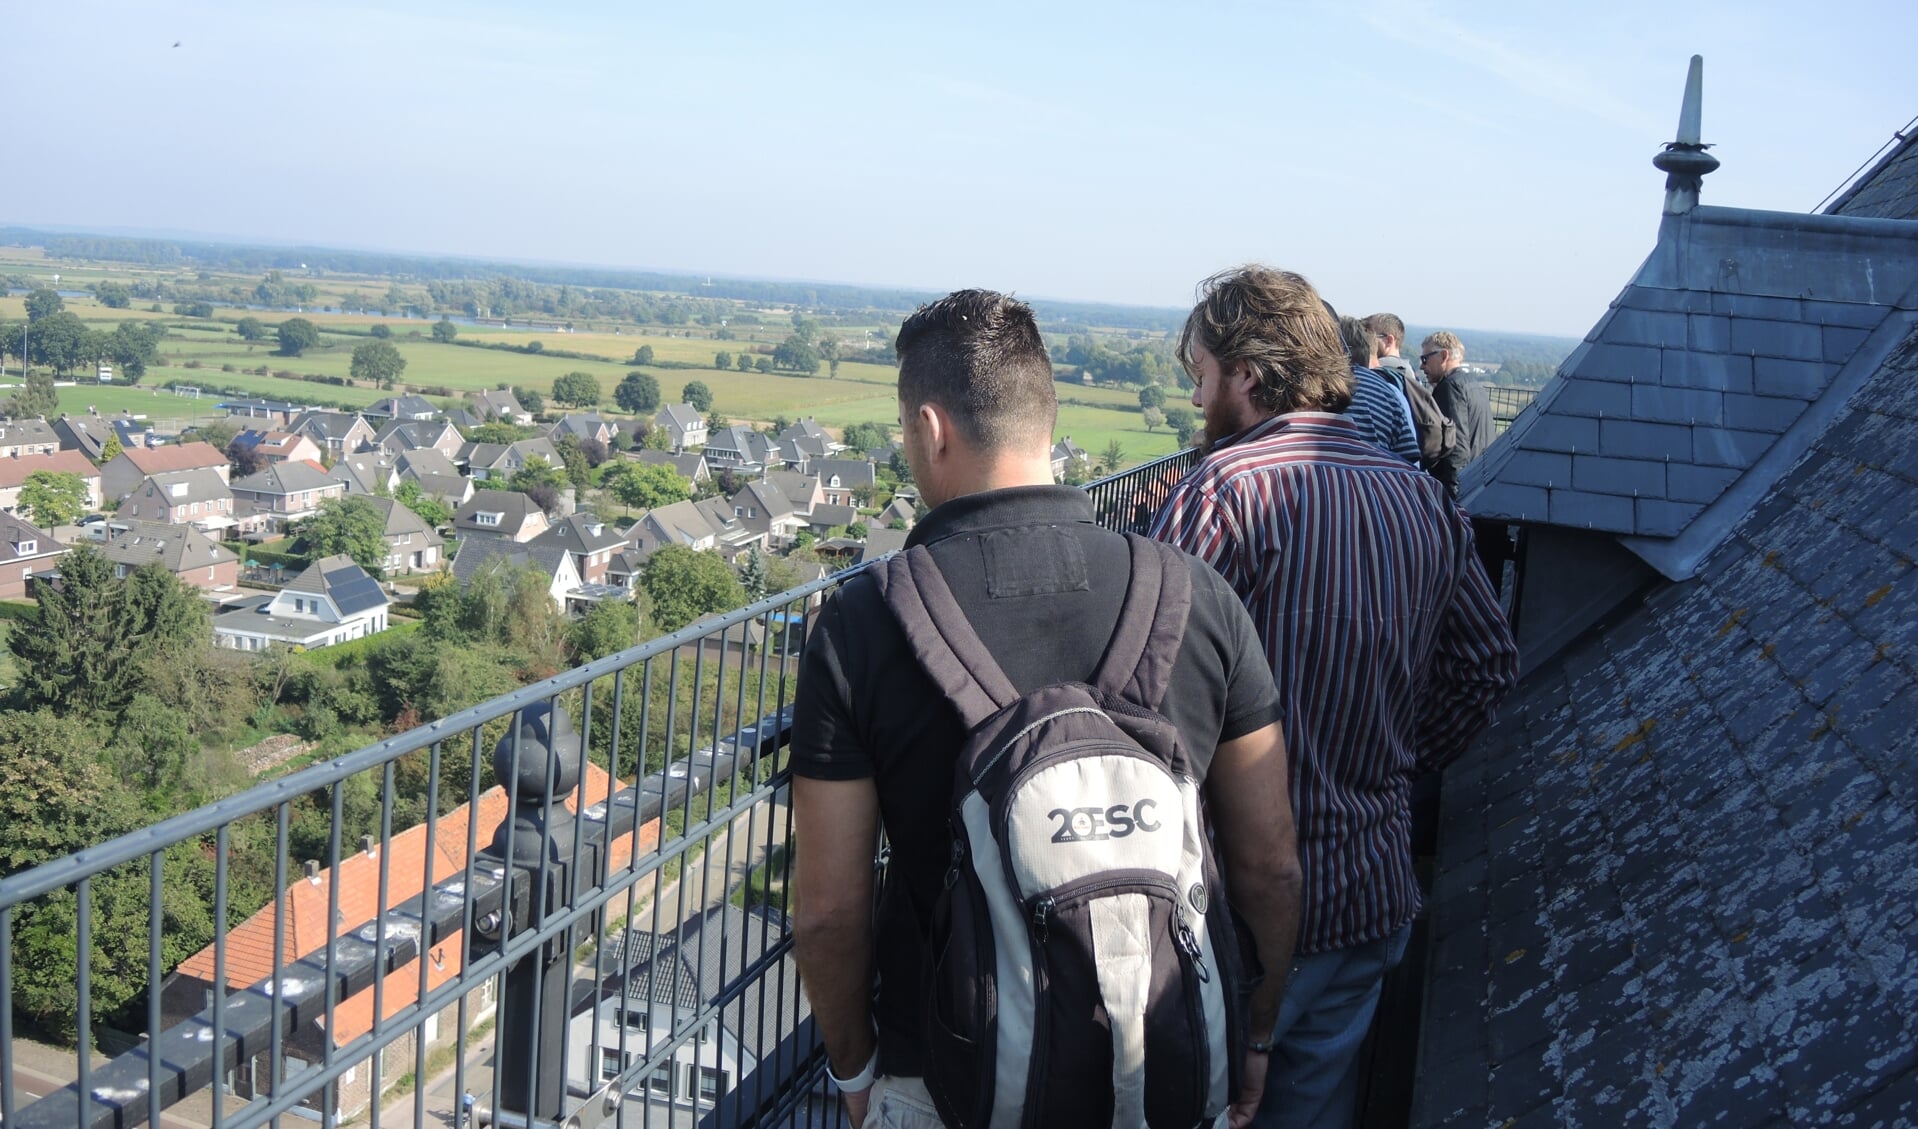 De Sint-Janstoren in Sambeek biedt een weids uitzicht over de omgeving. De 47 meter hoge toren is dit weekend weer te beklimmen.